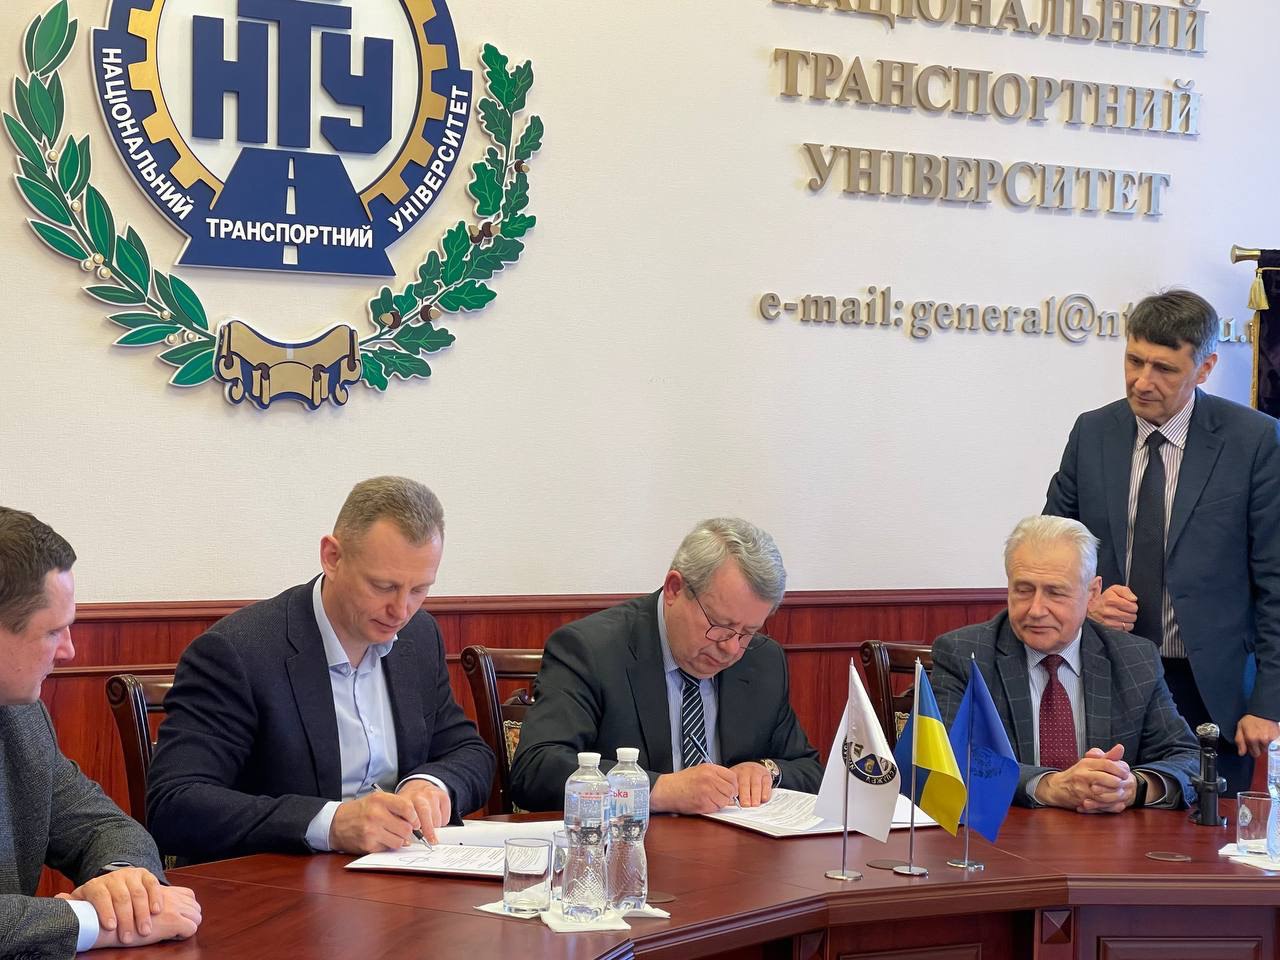 Між Державним науково-дослідним експертно-криміналістичним центром МВС України та Національним траспортним університетом укладено договір про співробітництво